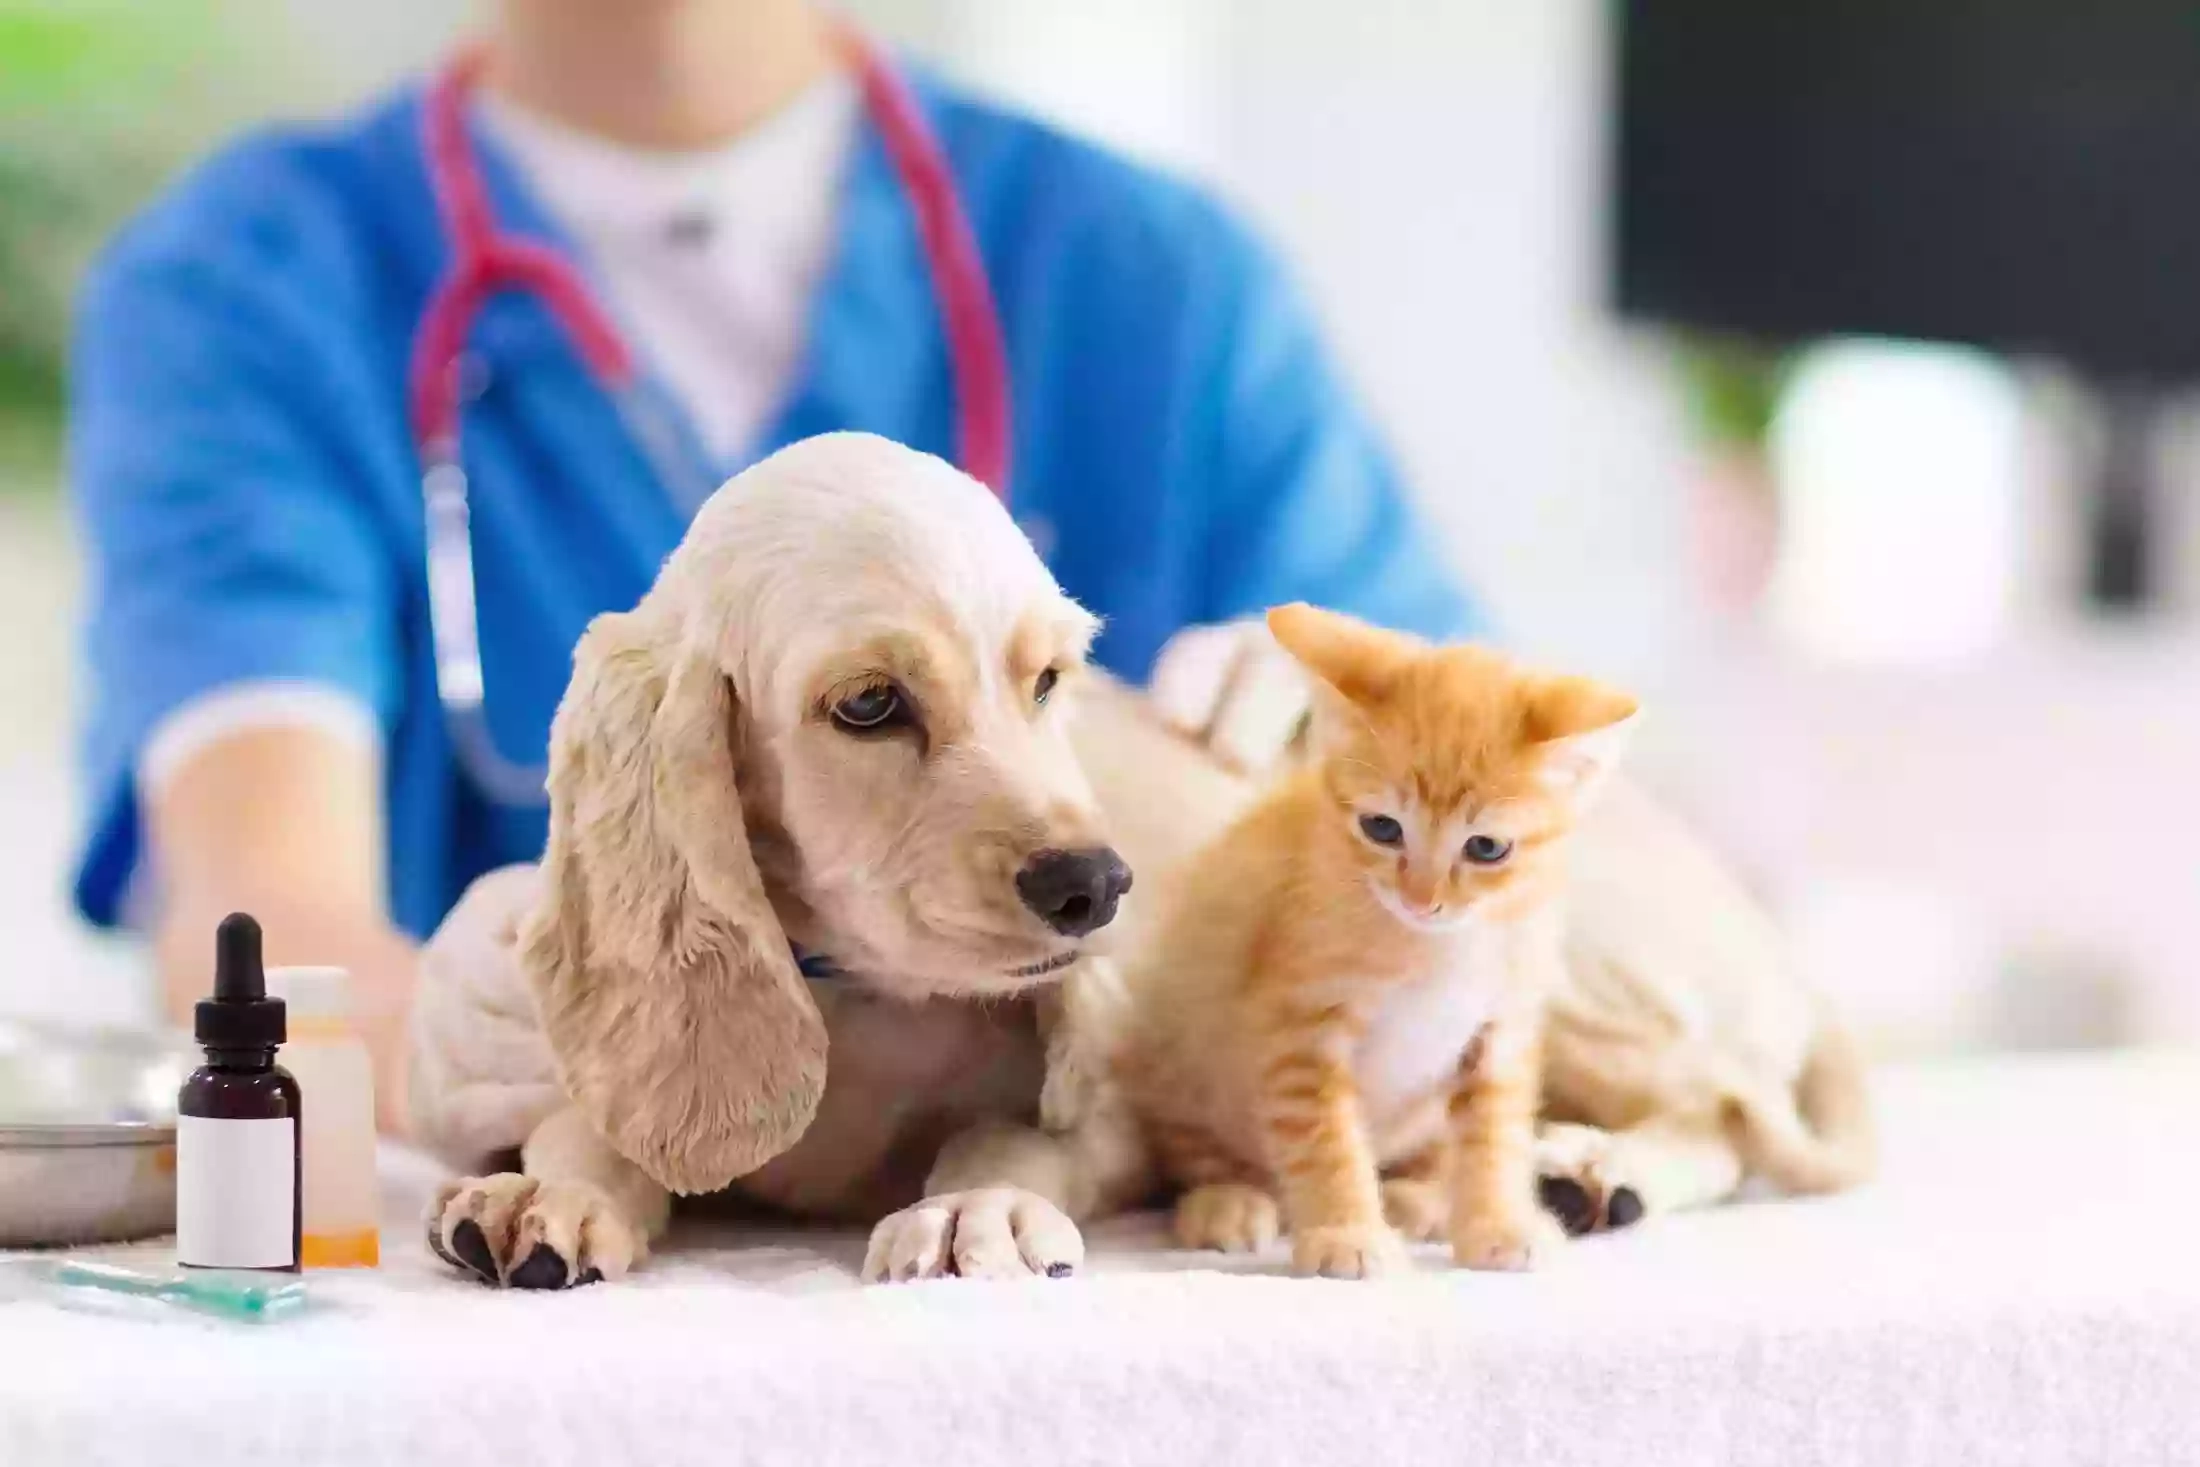 Amy Lara Veterinary Clinic